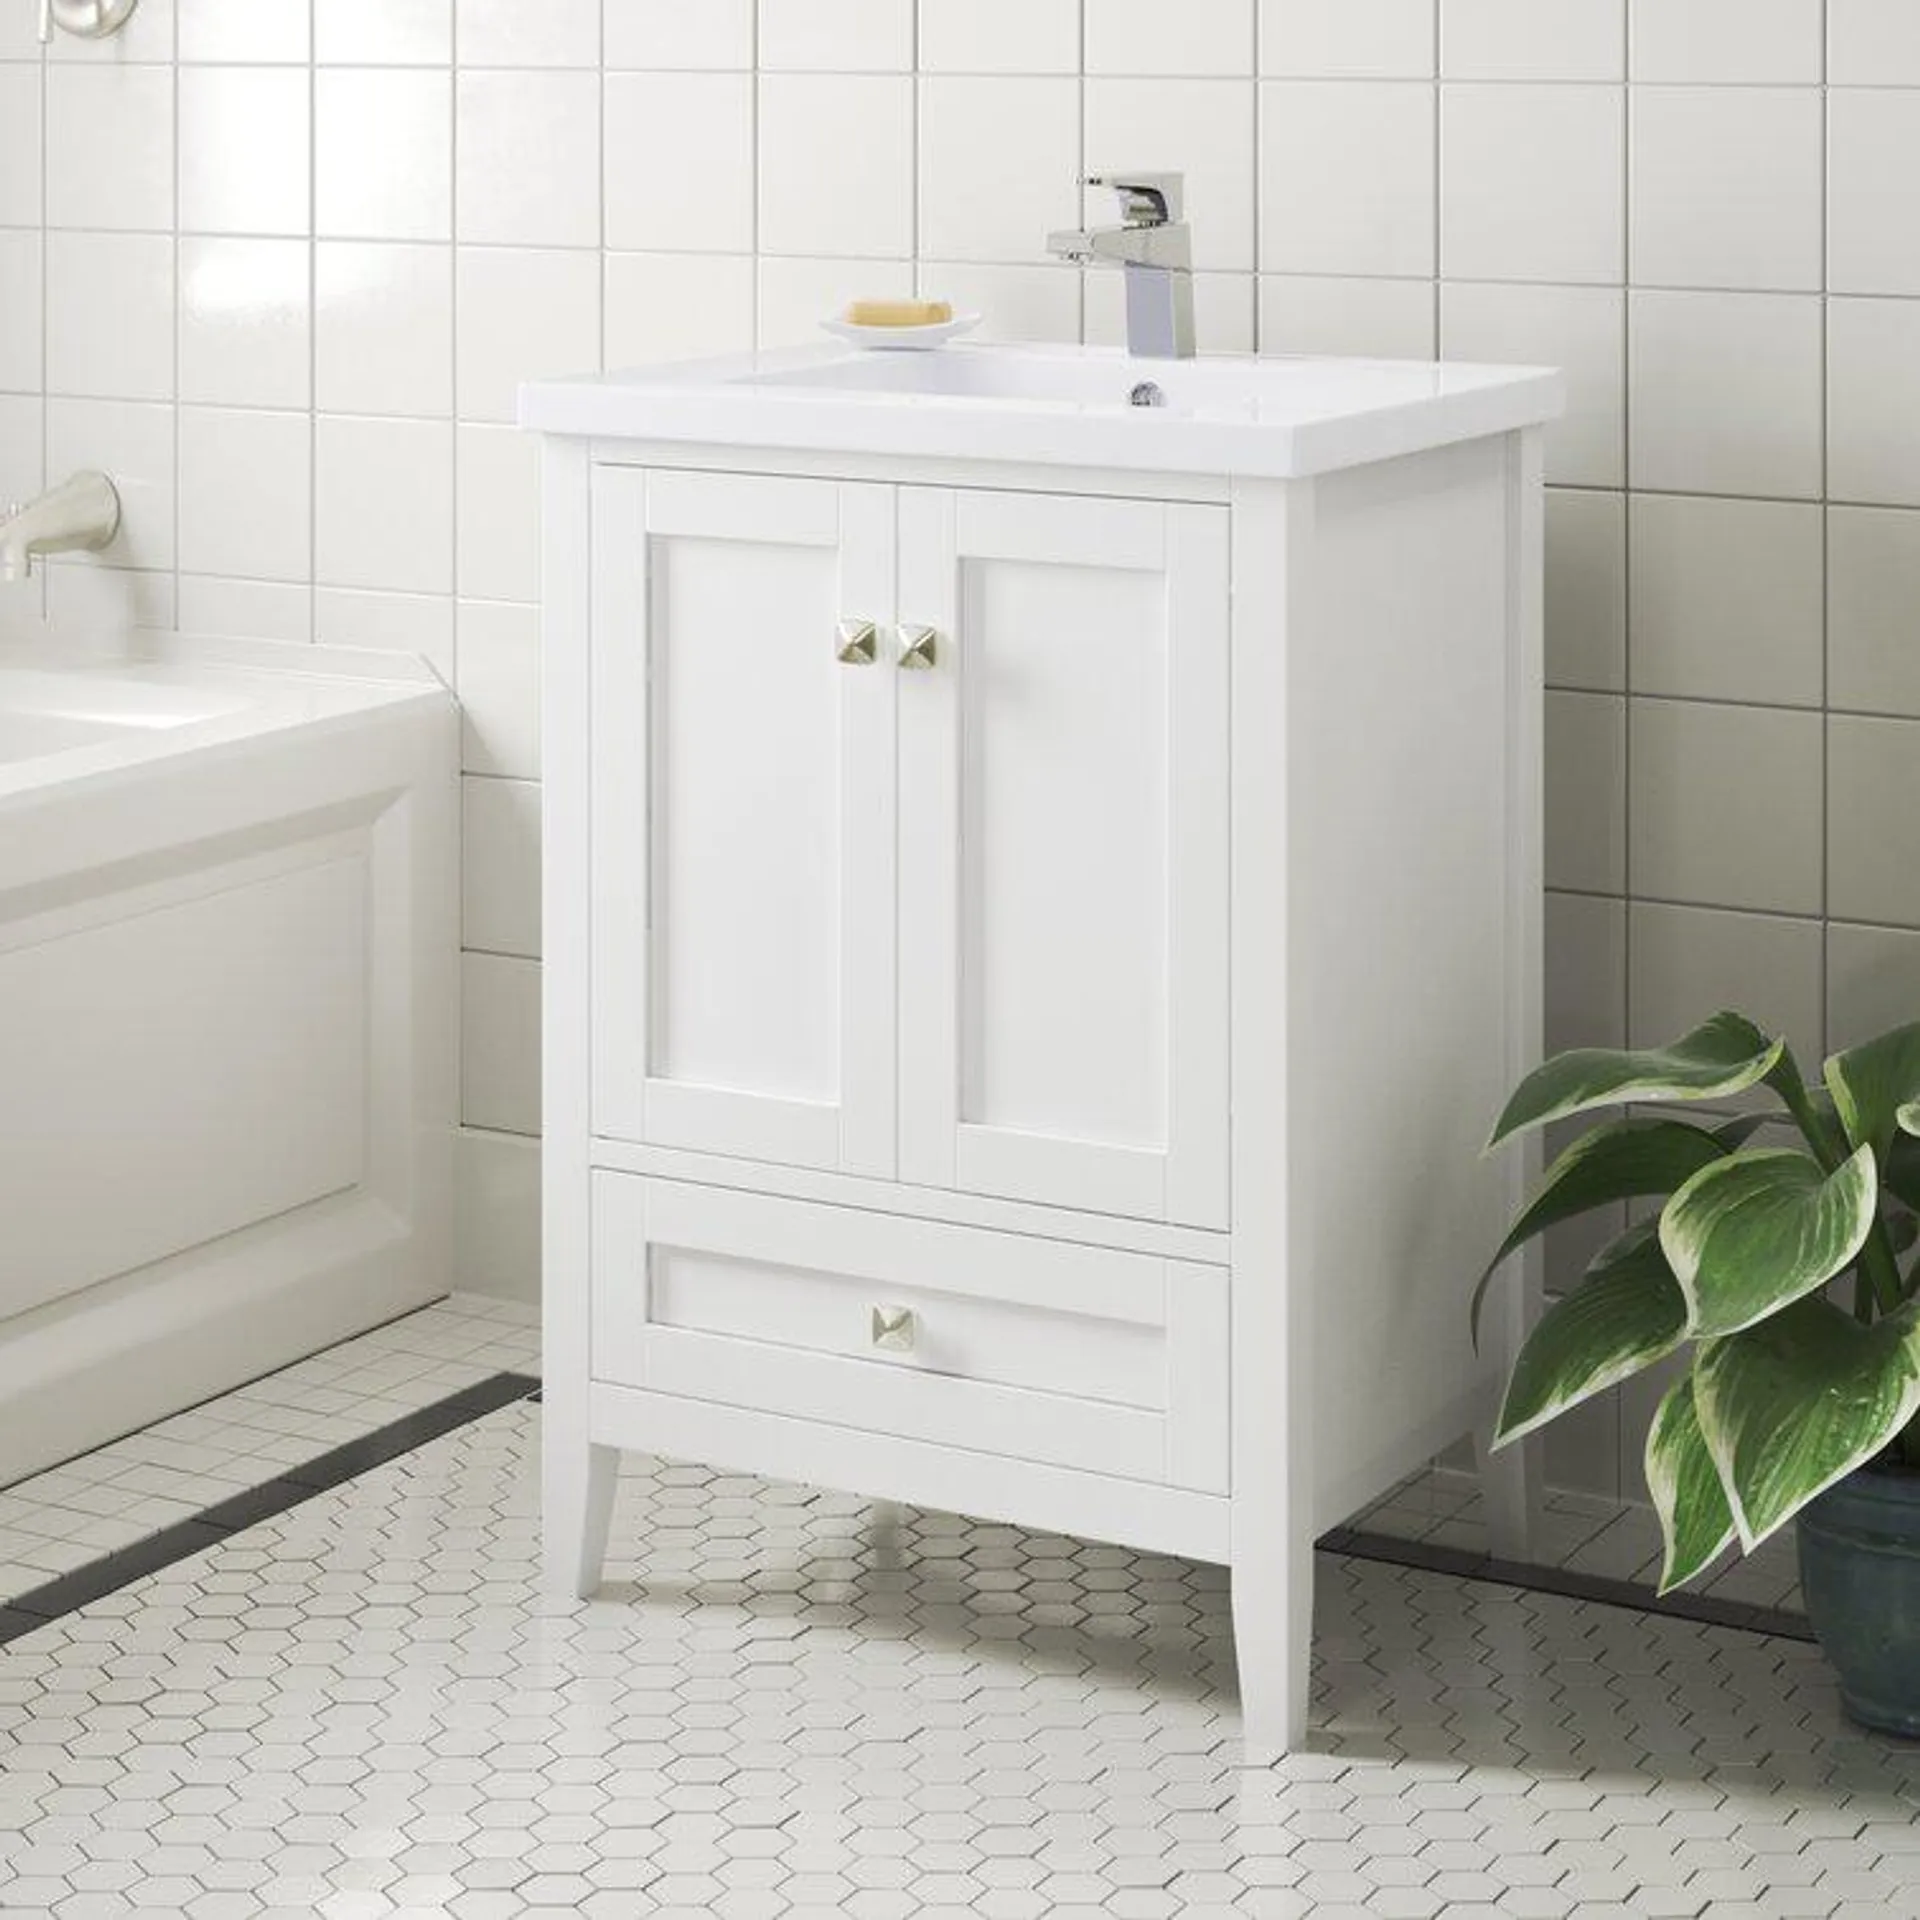 Modena 24'' Free-standing Single Bathroom Vanity with Resin Vanity Top